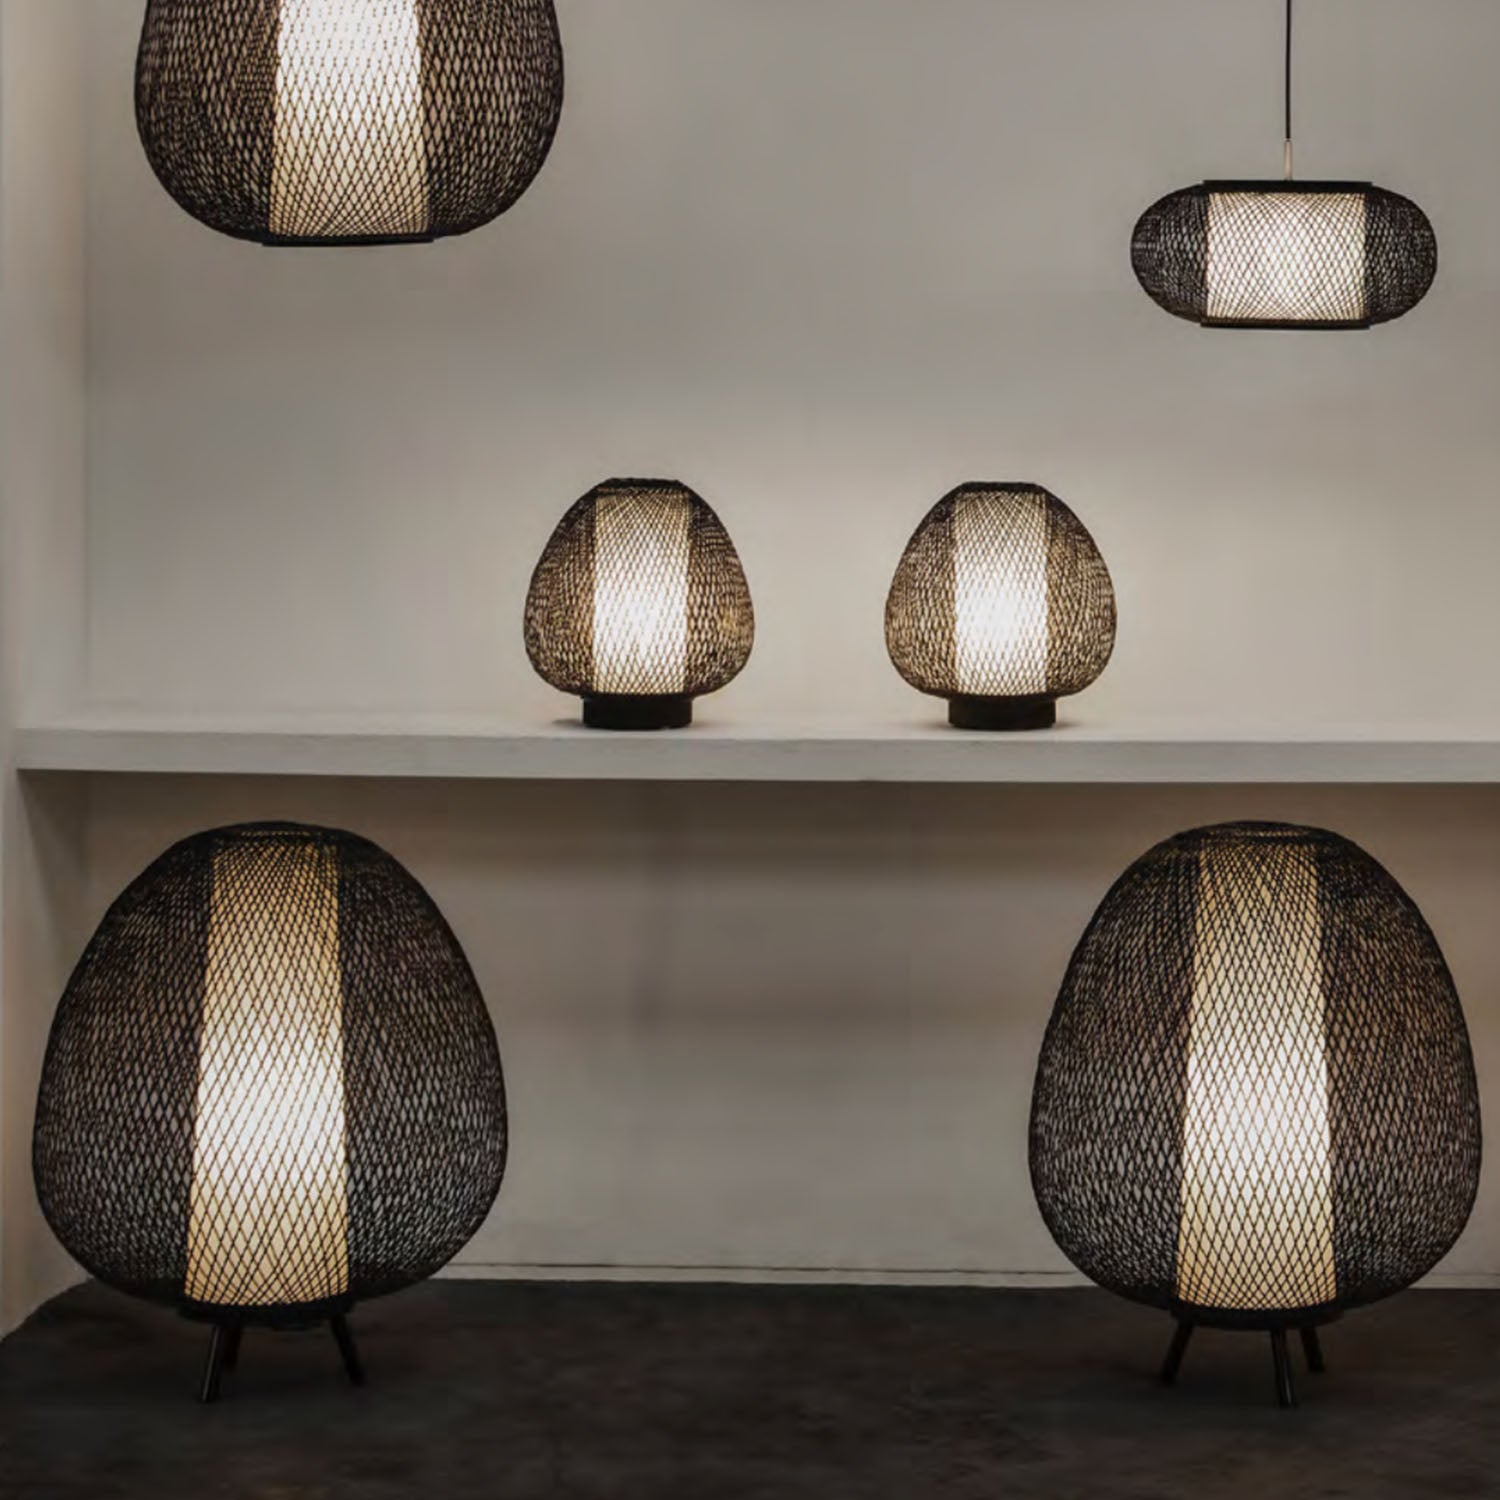 TWIGGY EGG – Eiförmige Stehlampe aus geflochtenem Bambus